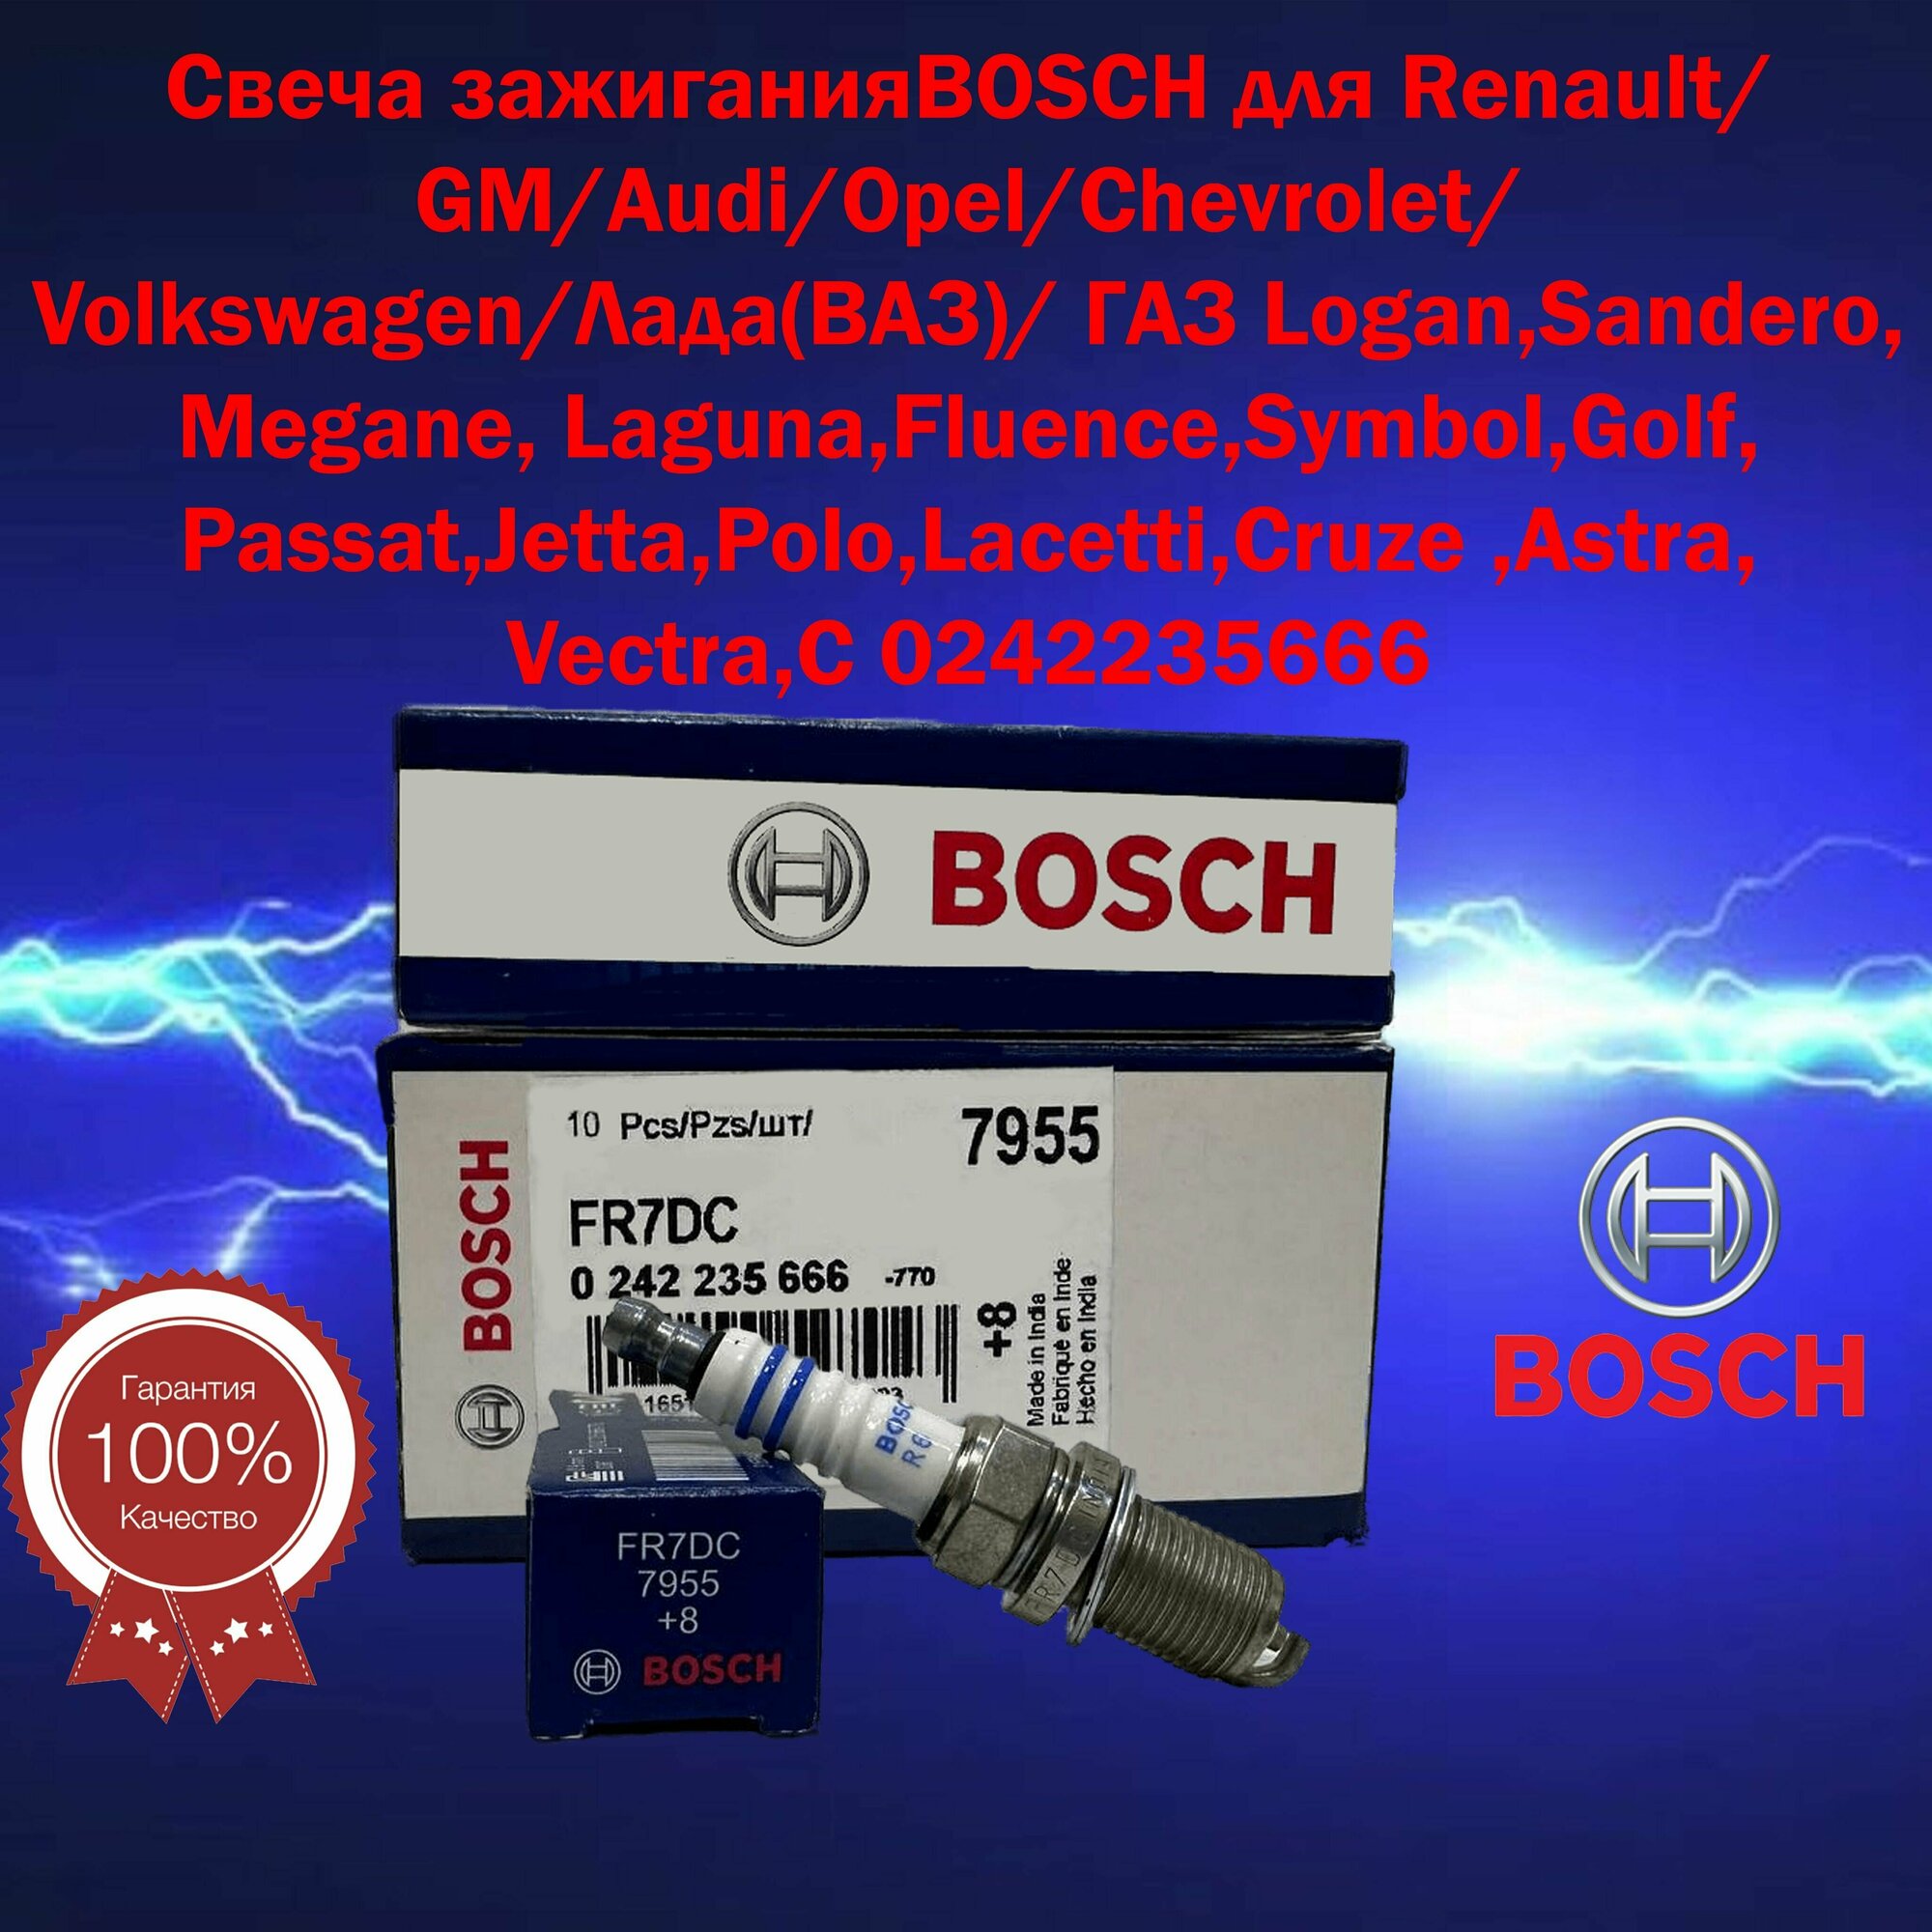 Свеча зажигания Bosch для Renault, GM, Audi, Opel и других автомобилей